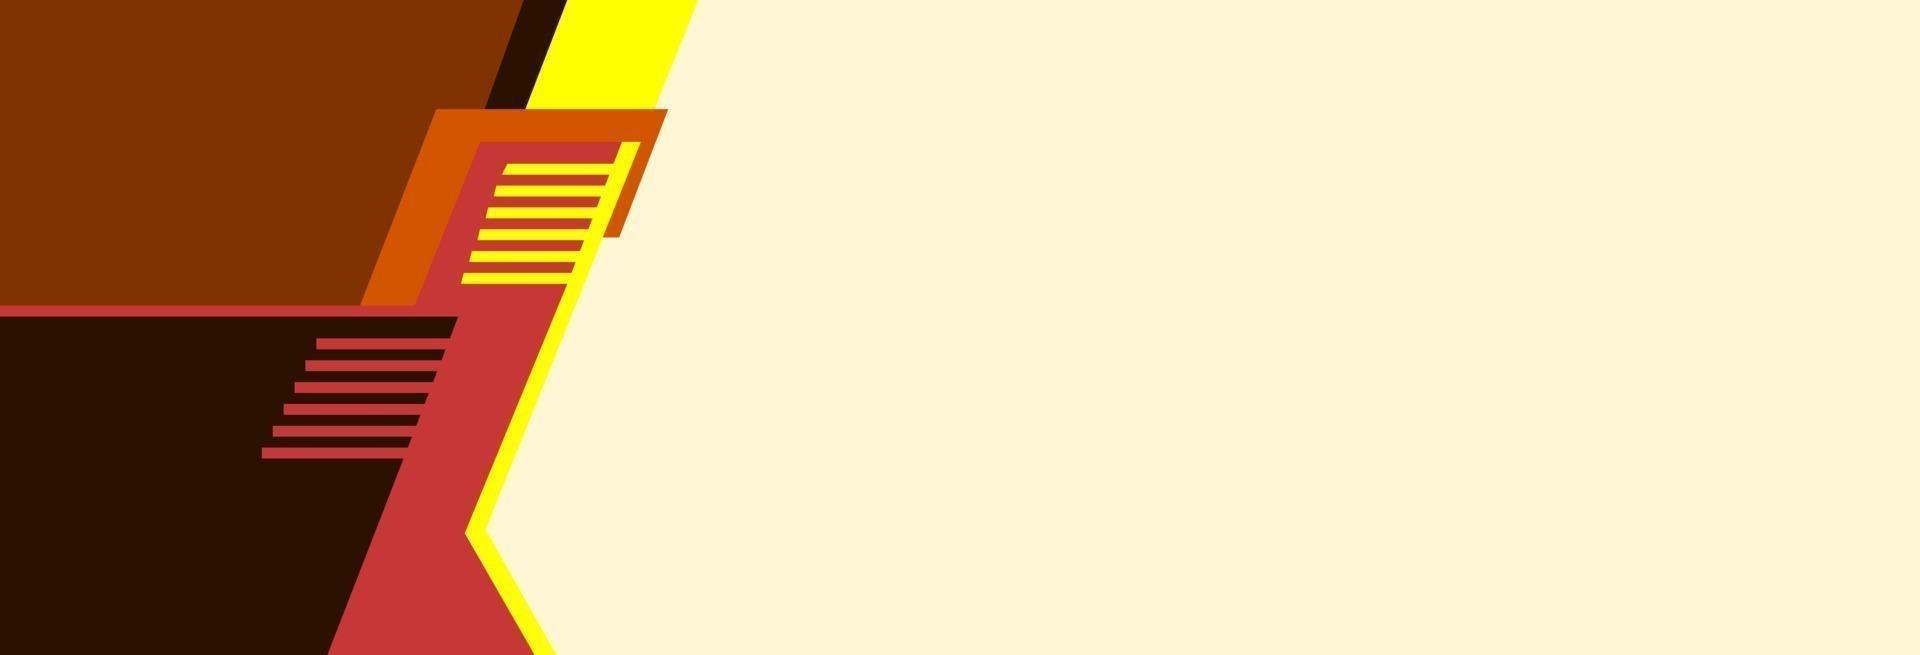 bannière jaune avec bande rouge et marron vecteur